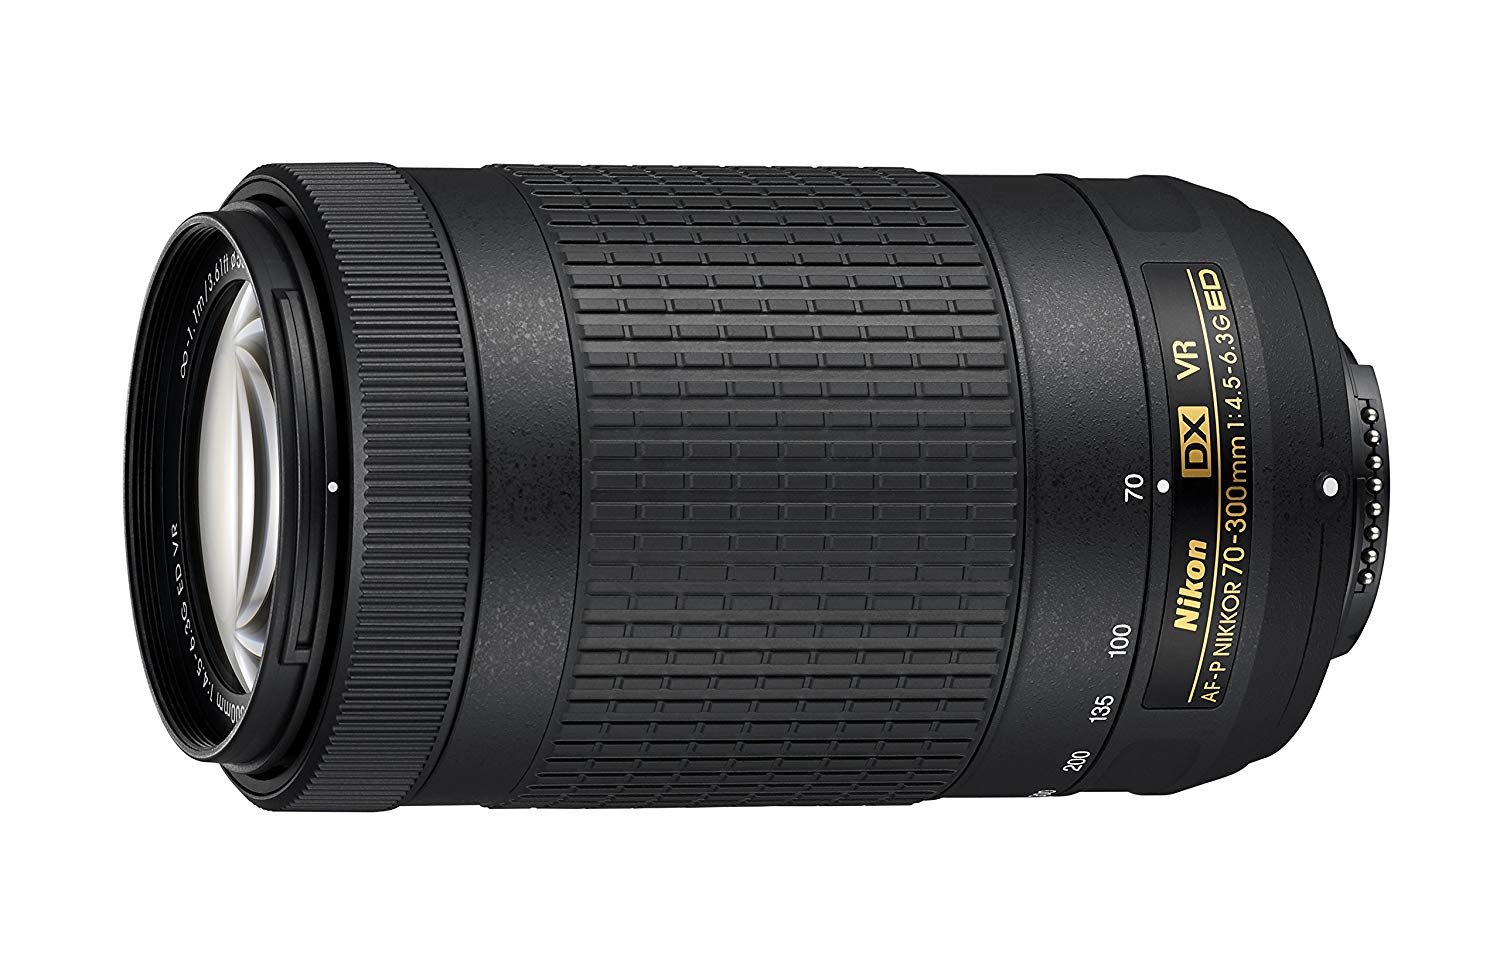 Nikon AF-P DX NIKKOR 70-300mm f/4.5-6.3G ED VR Lens for...